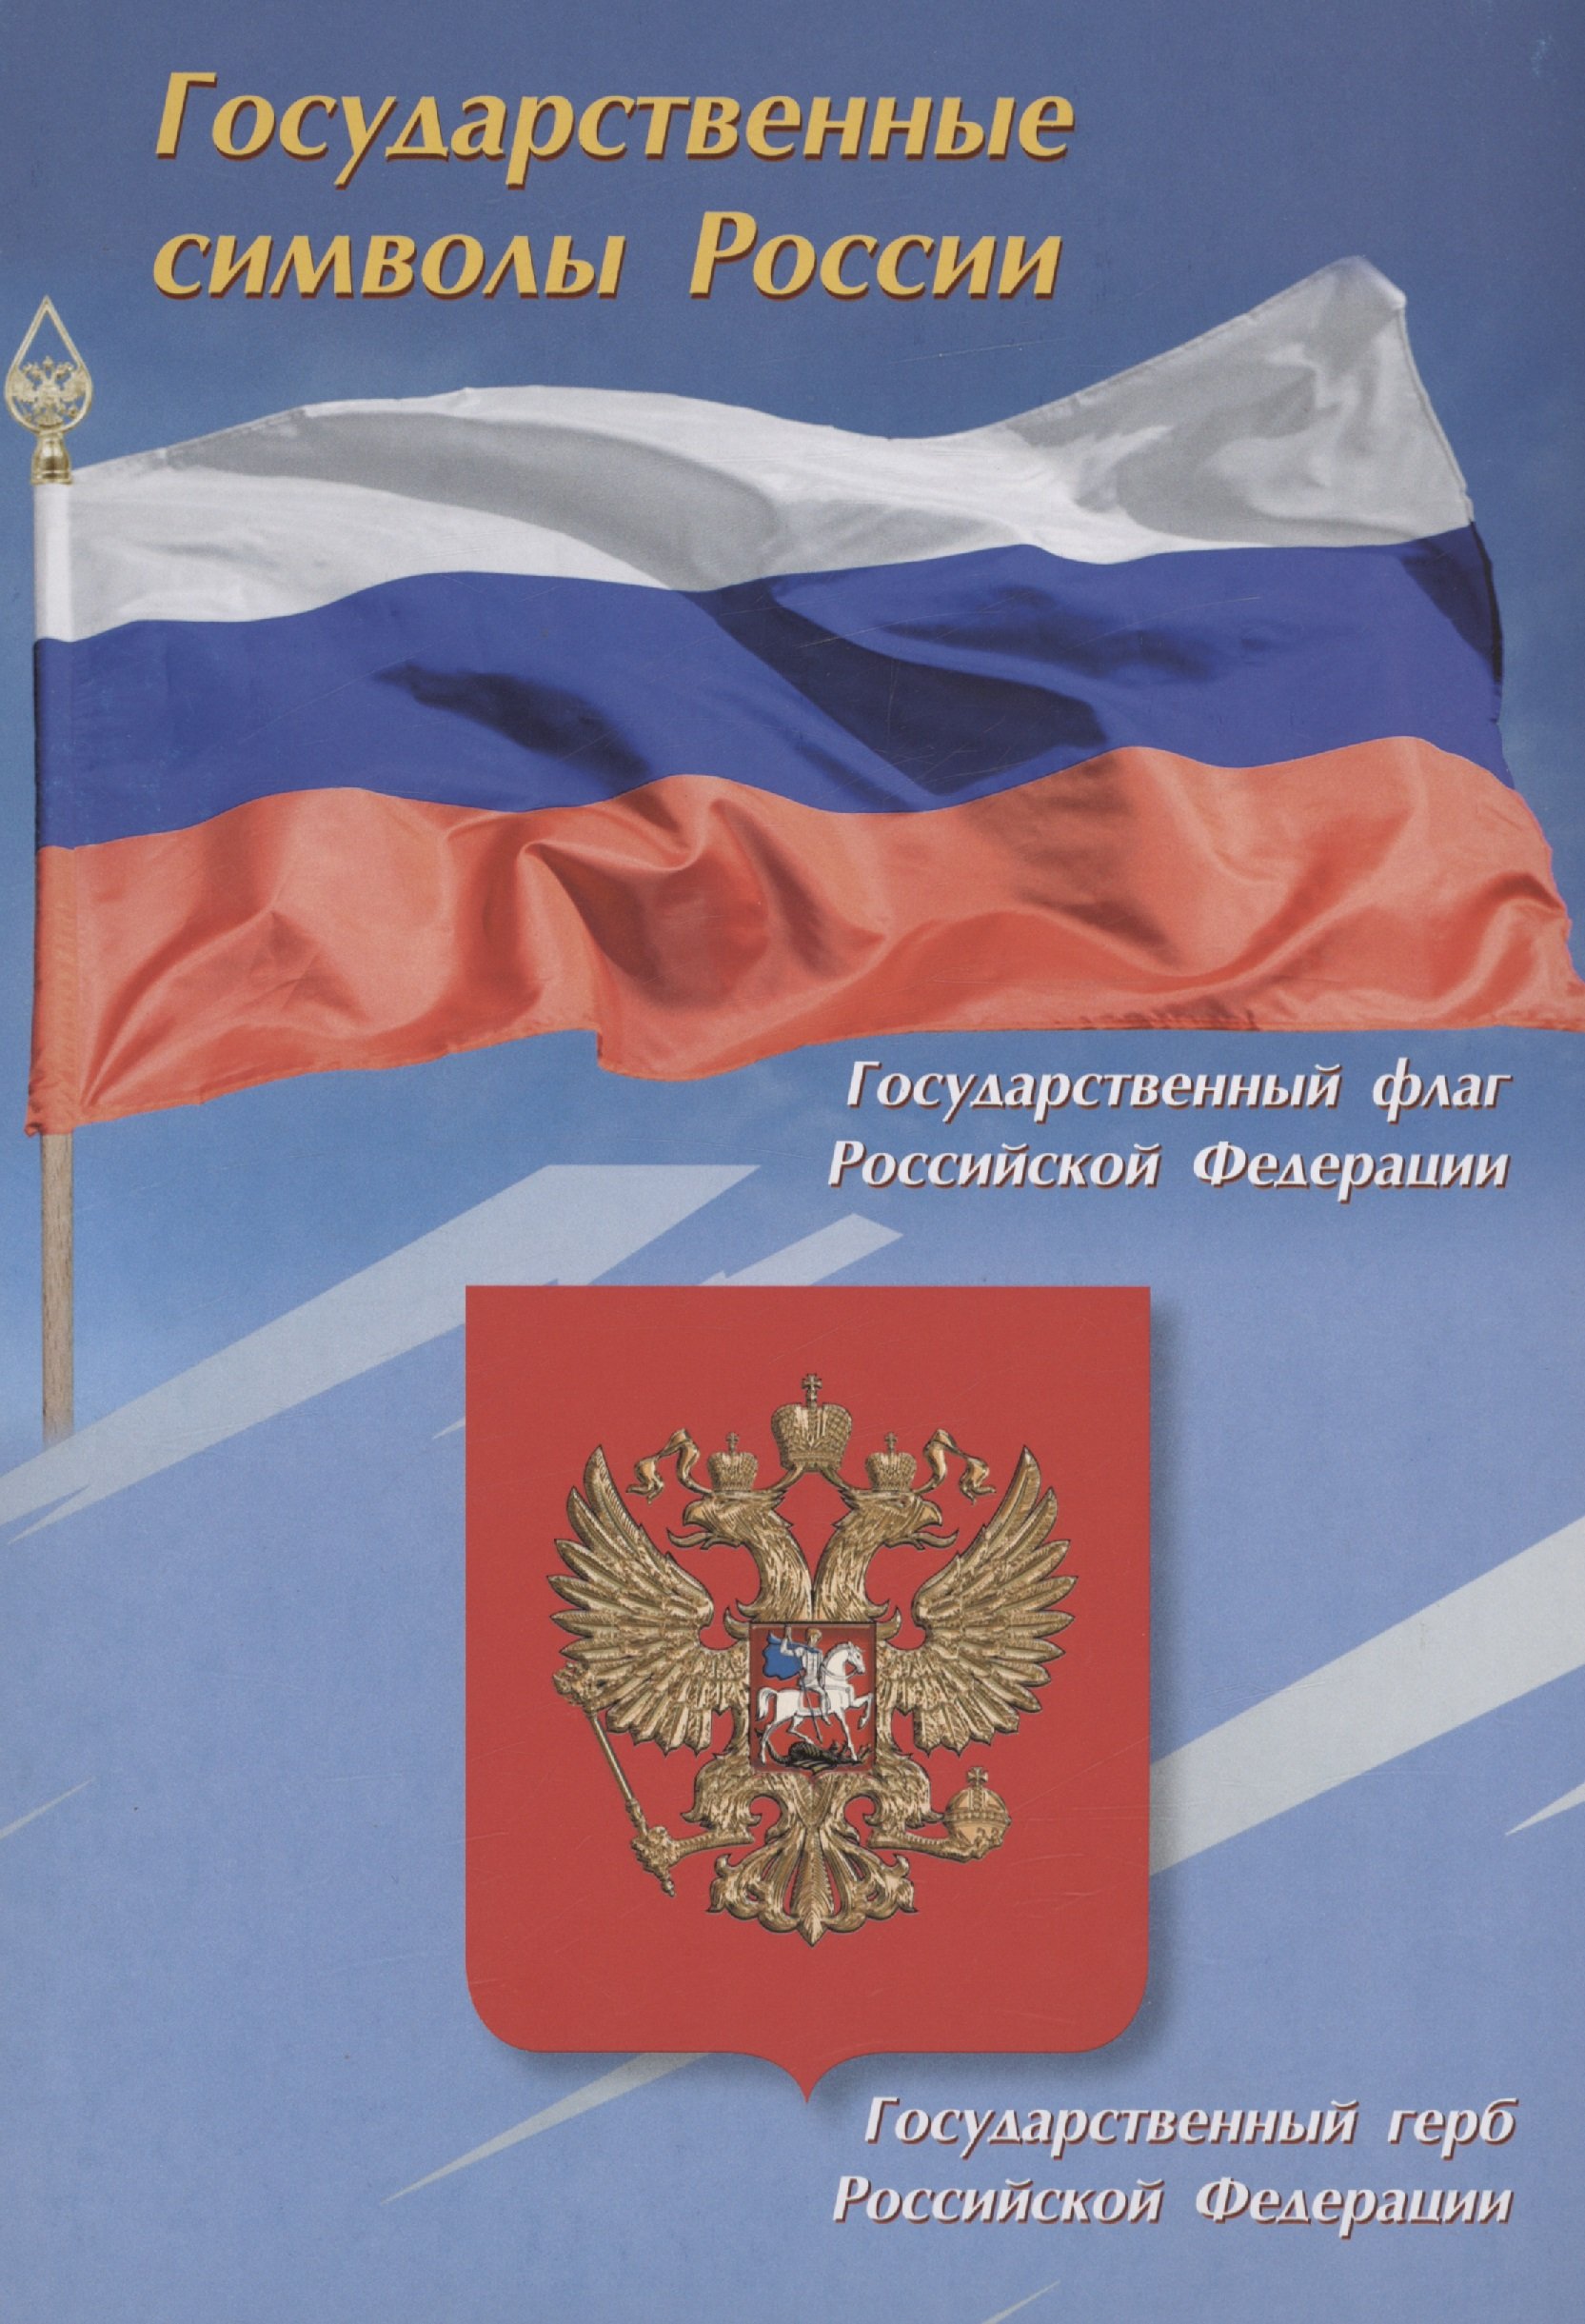 Тематический плакат. Государственные символы России